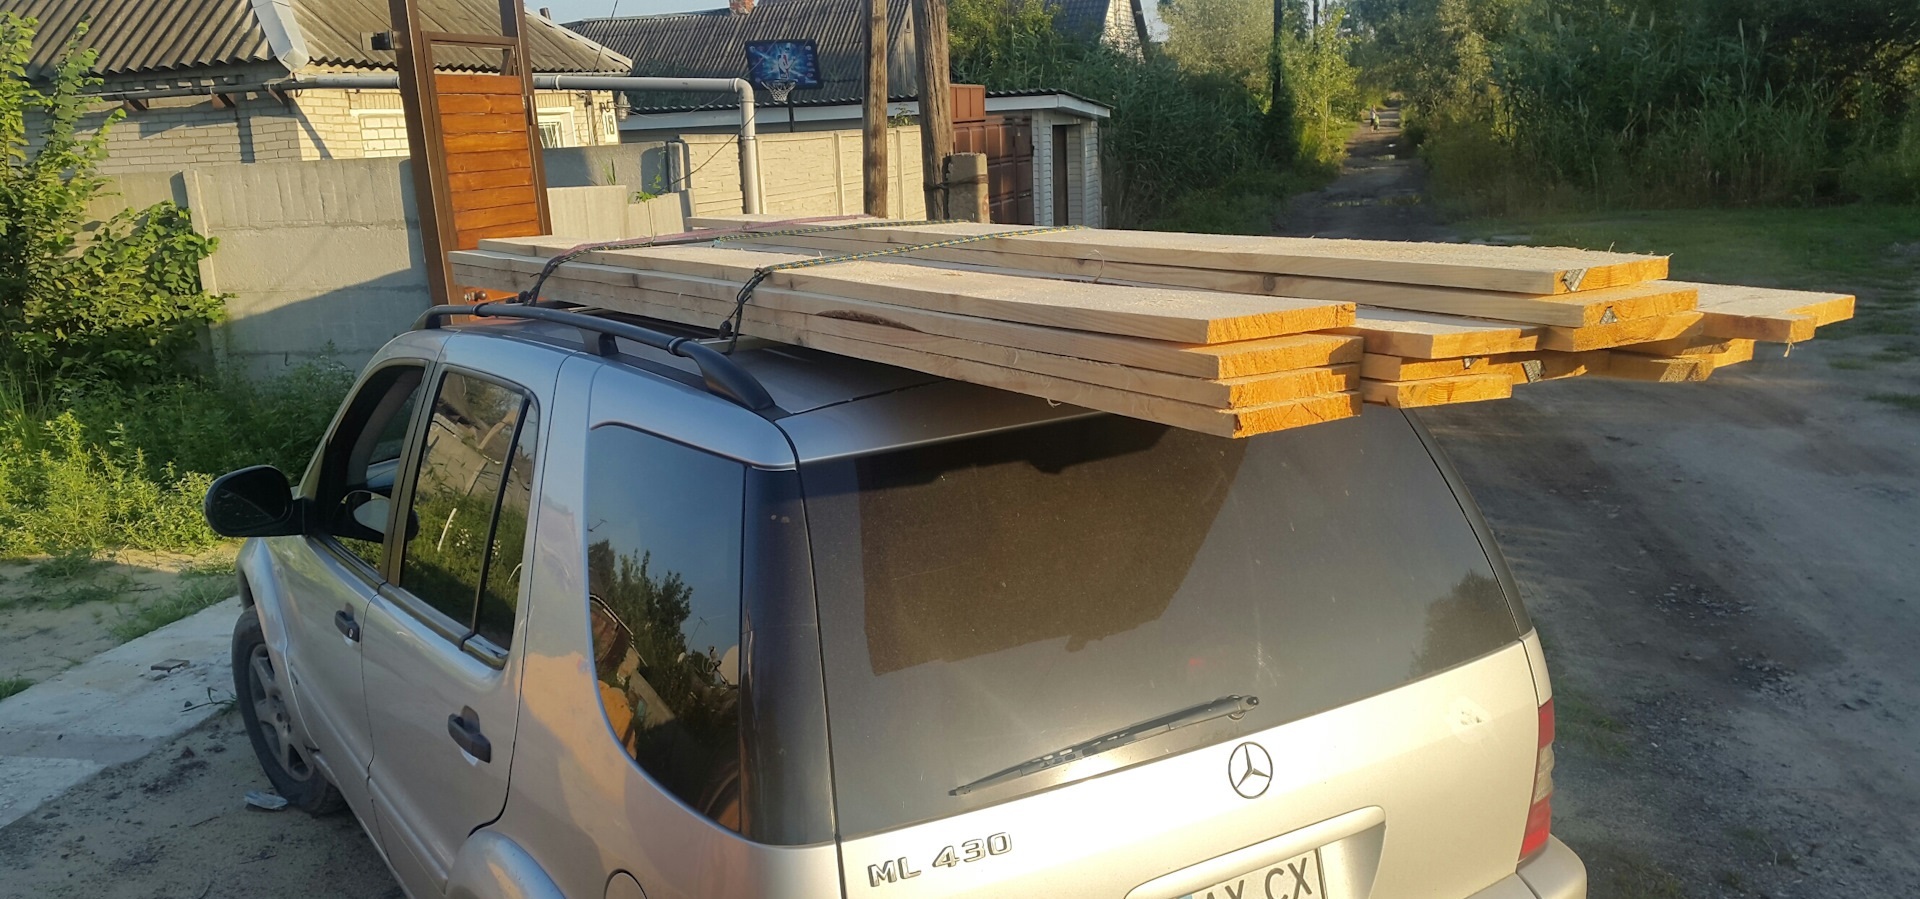 Как закрепить различный груз на крыше автомобиле – простые и удобные способы